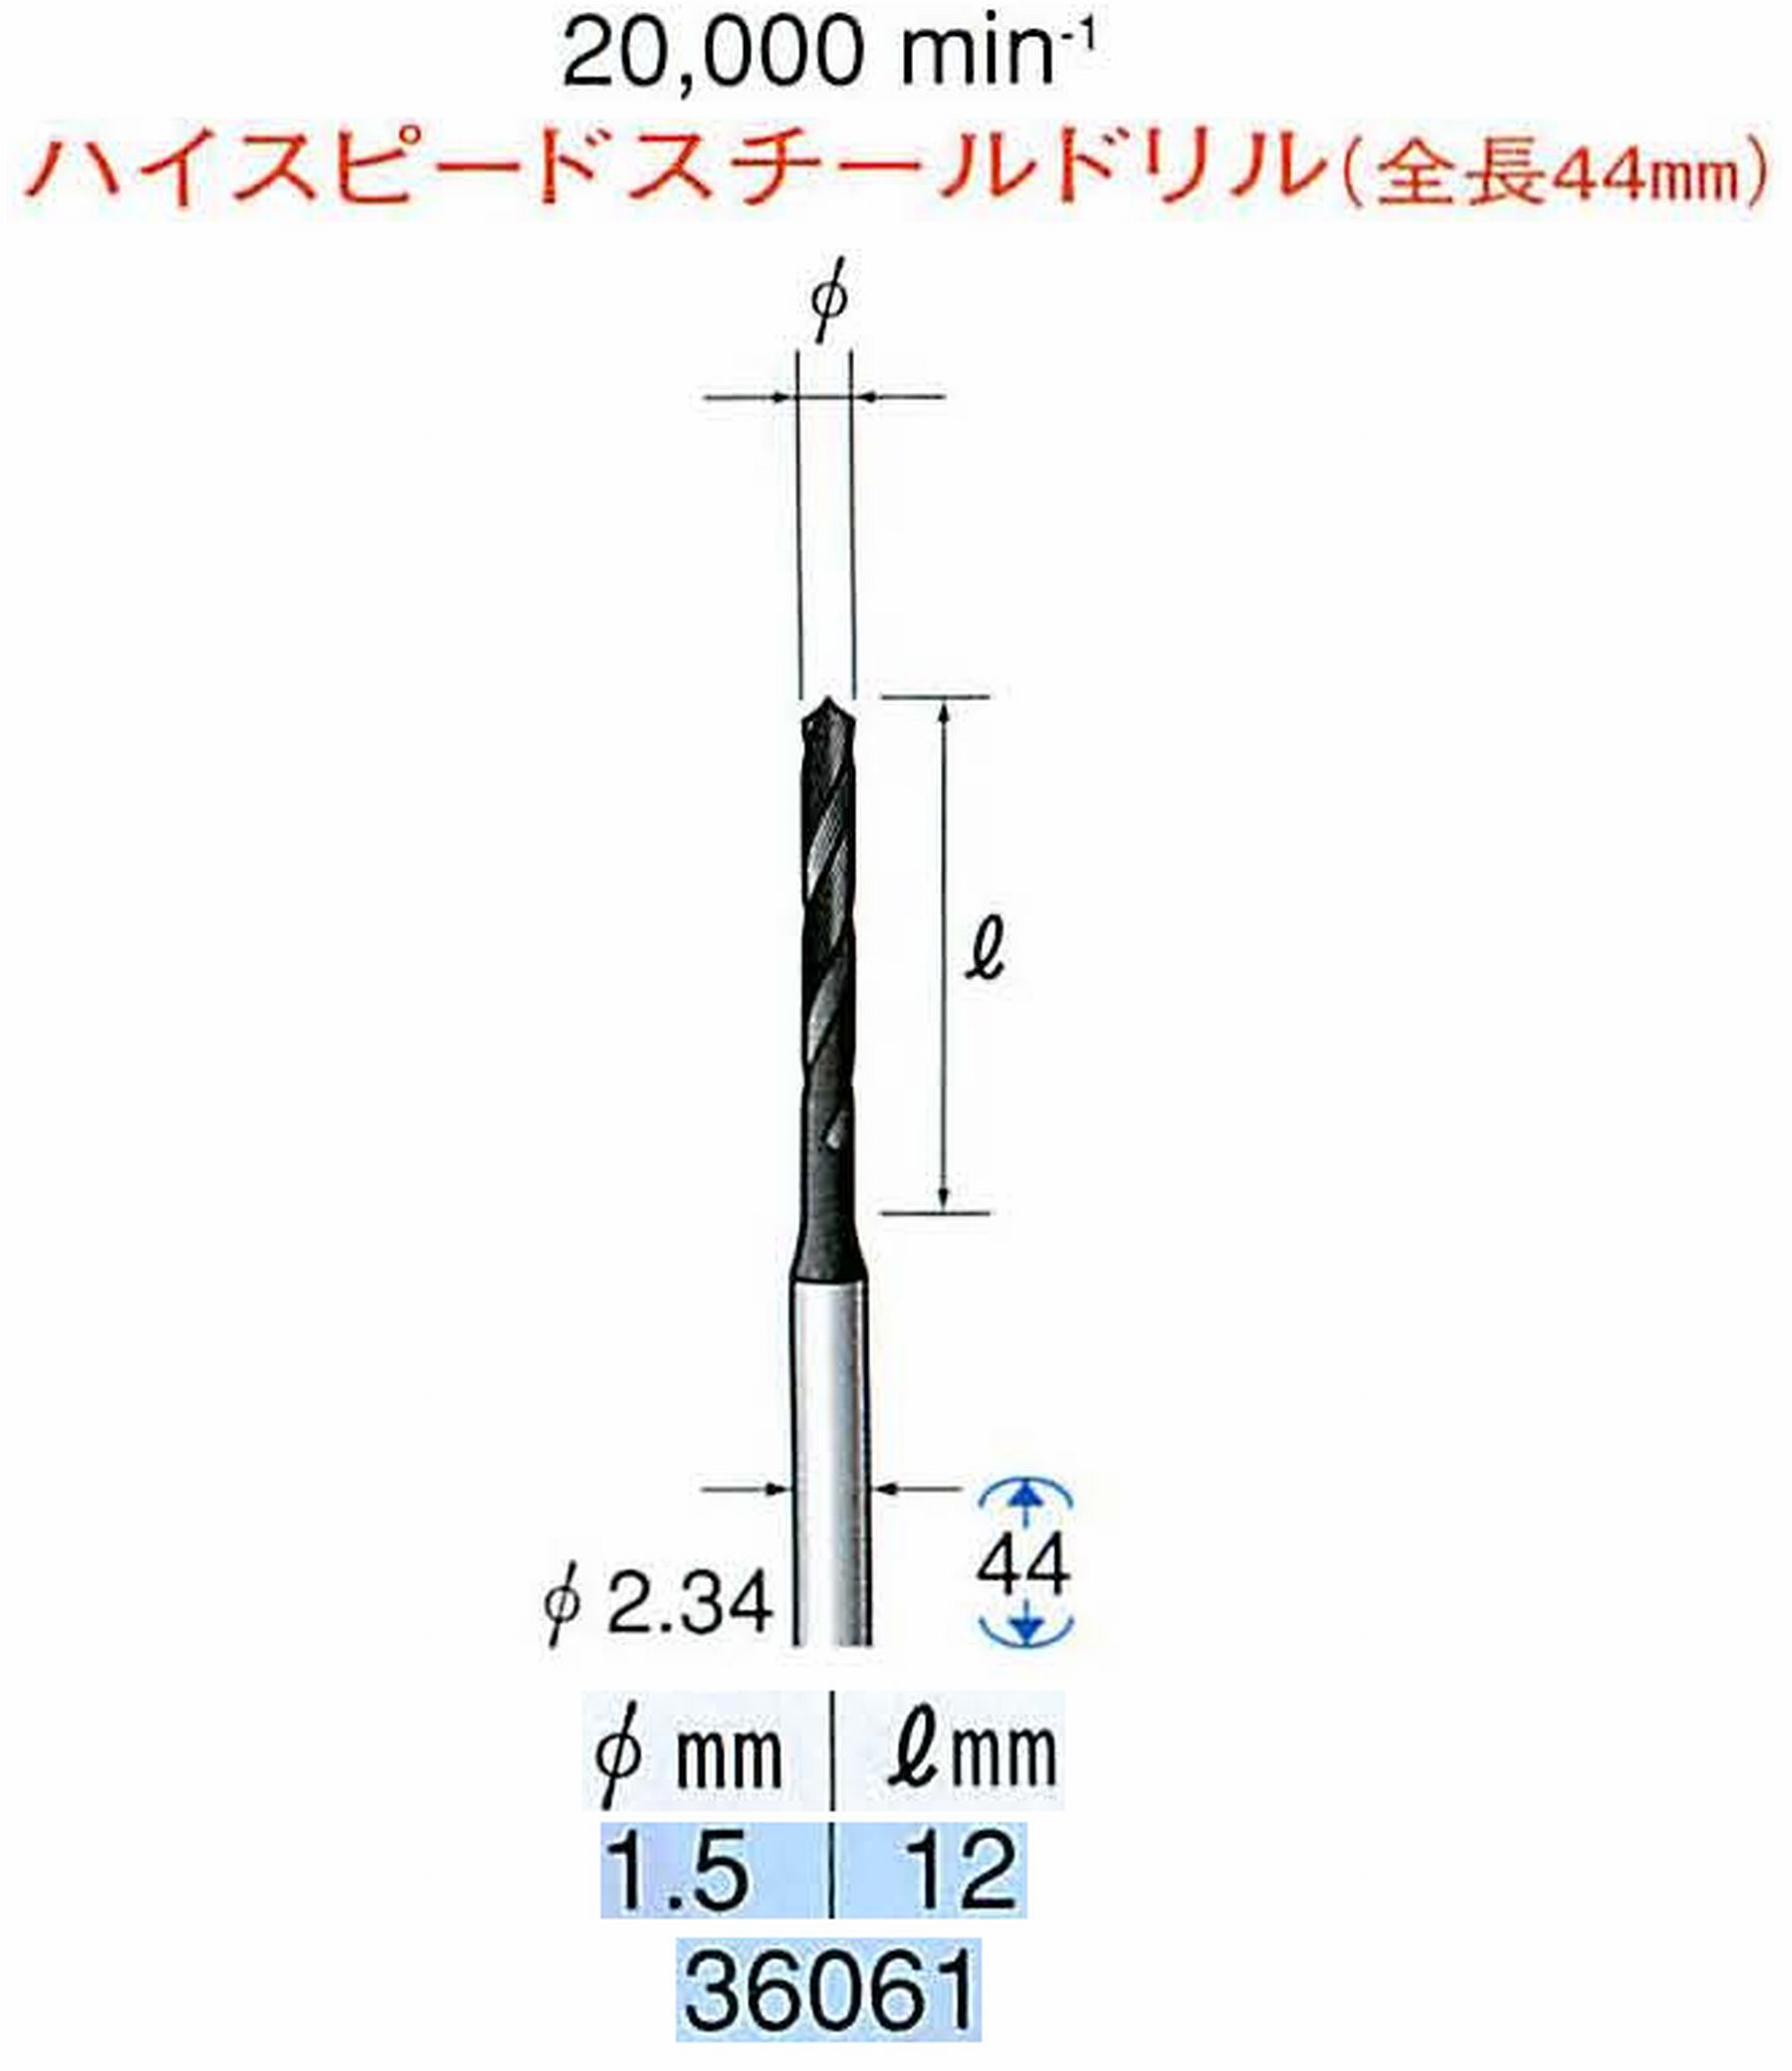 ナカニシ/NAKANISHI ツイストドリル ハイスピードスチール(H.S.S)ドリル(全長44mm) 軸径(シャンク) φ2.34mm 36061